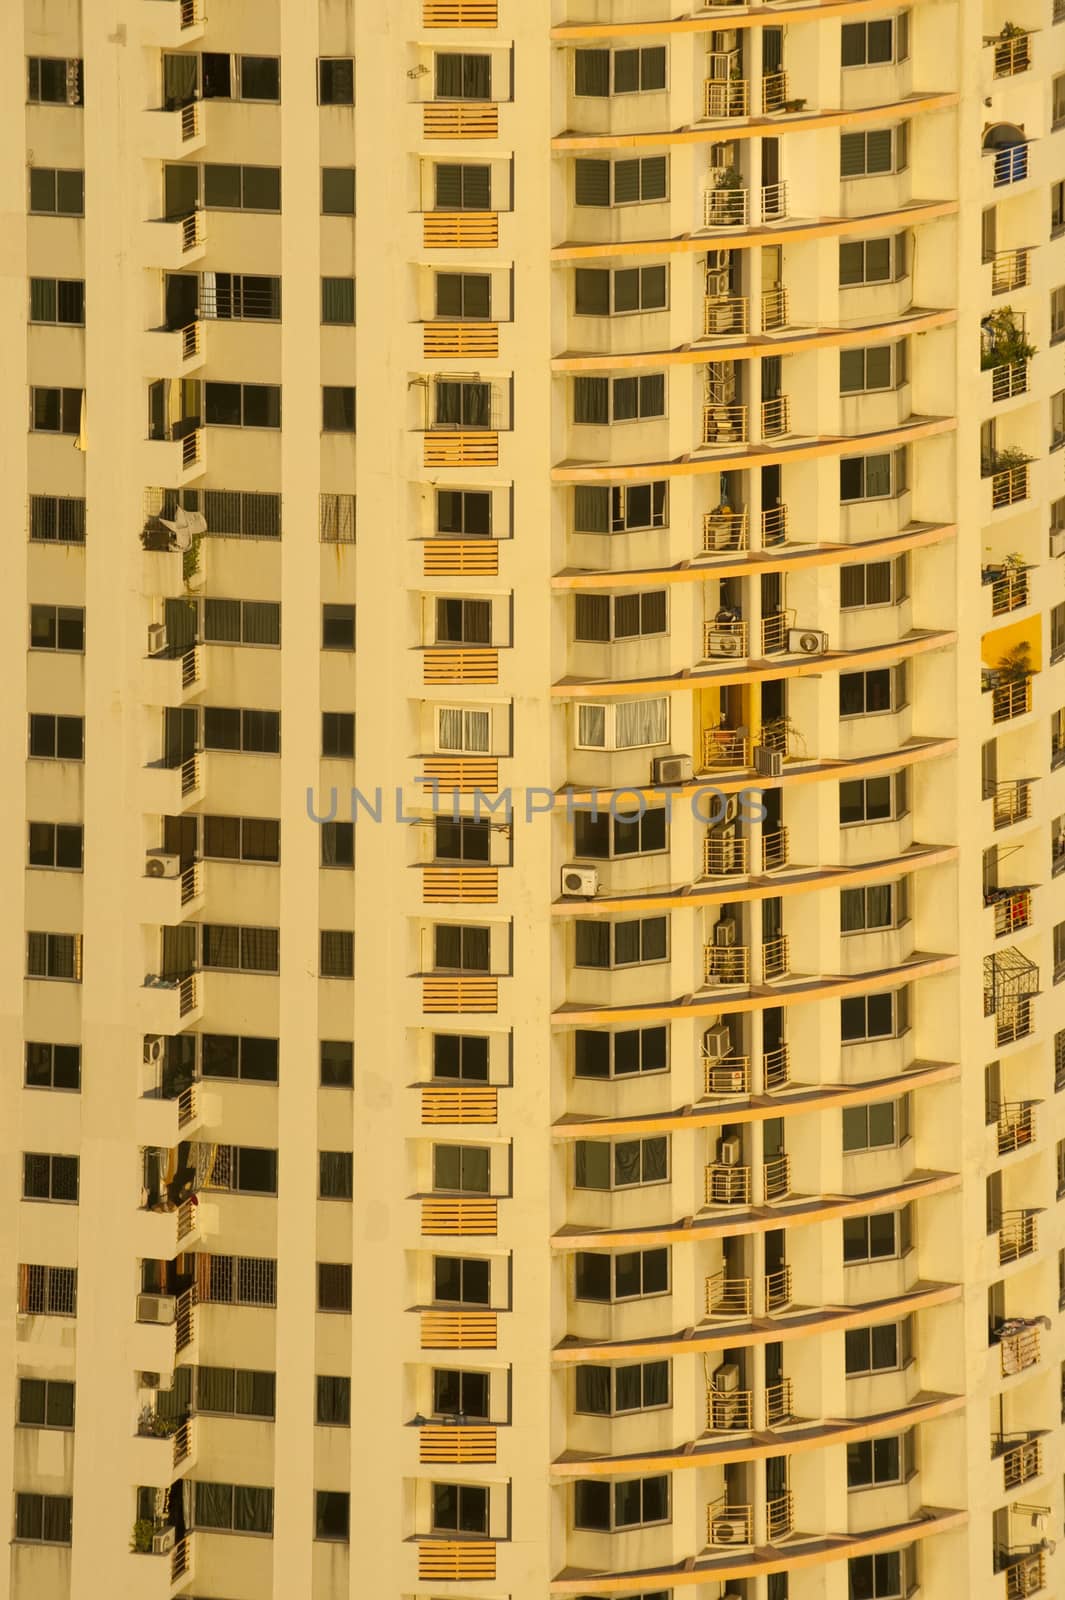 Condominium with sunset in Bangkok, Thailand.